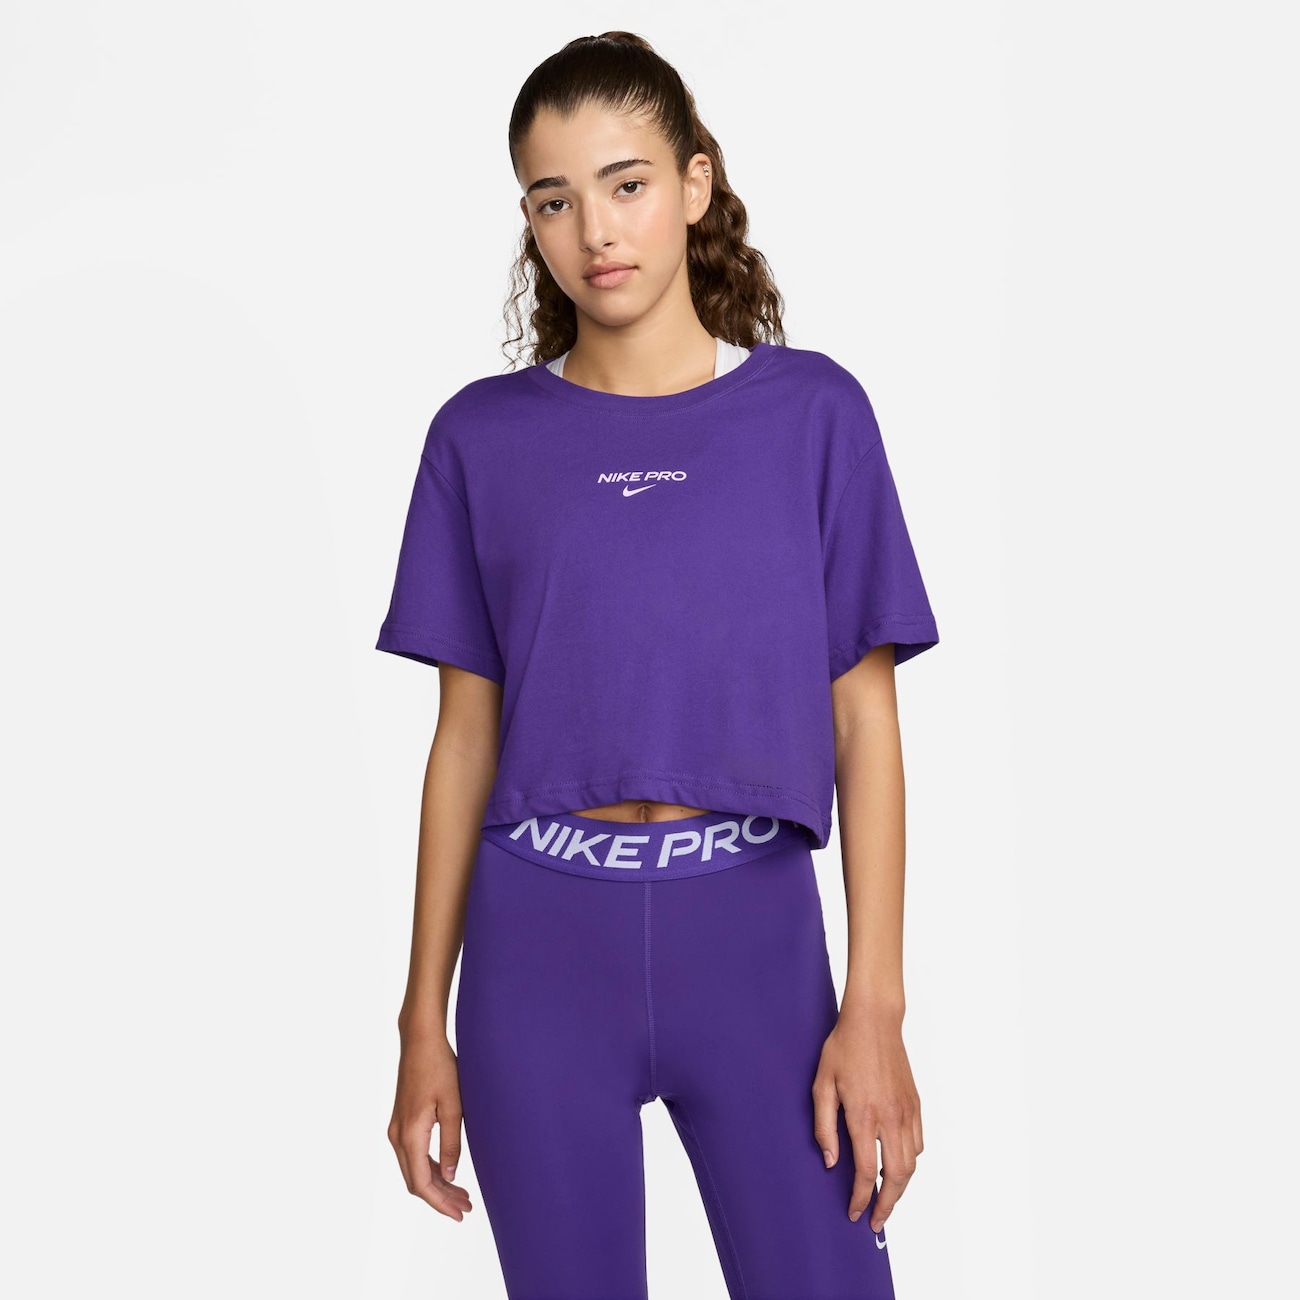 Camiseta Nike Pro Croped Feminina